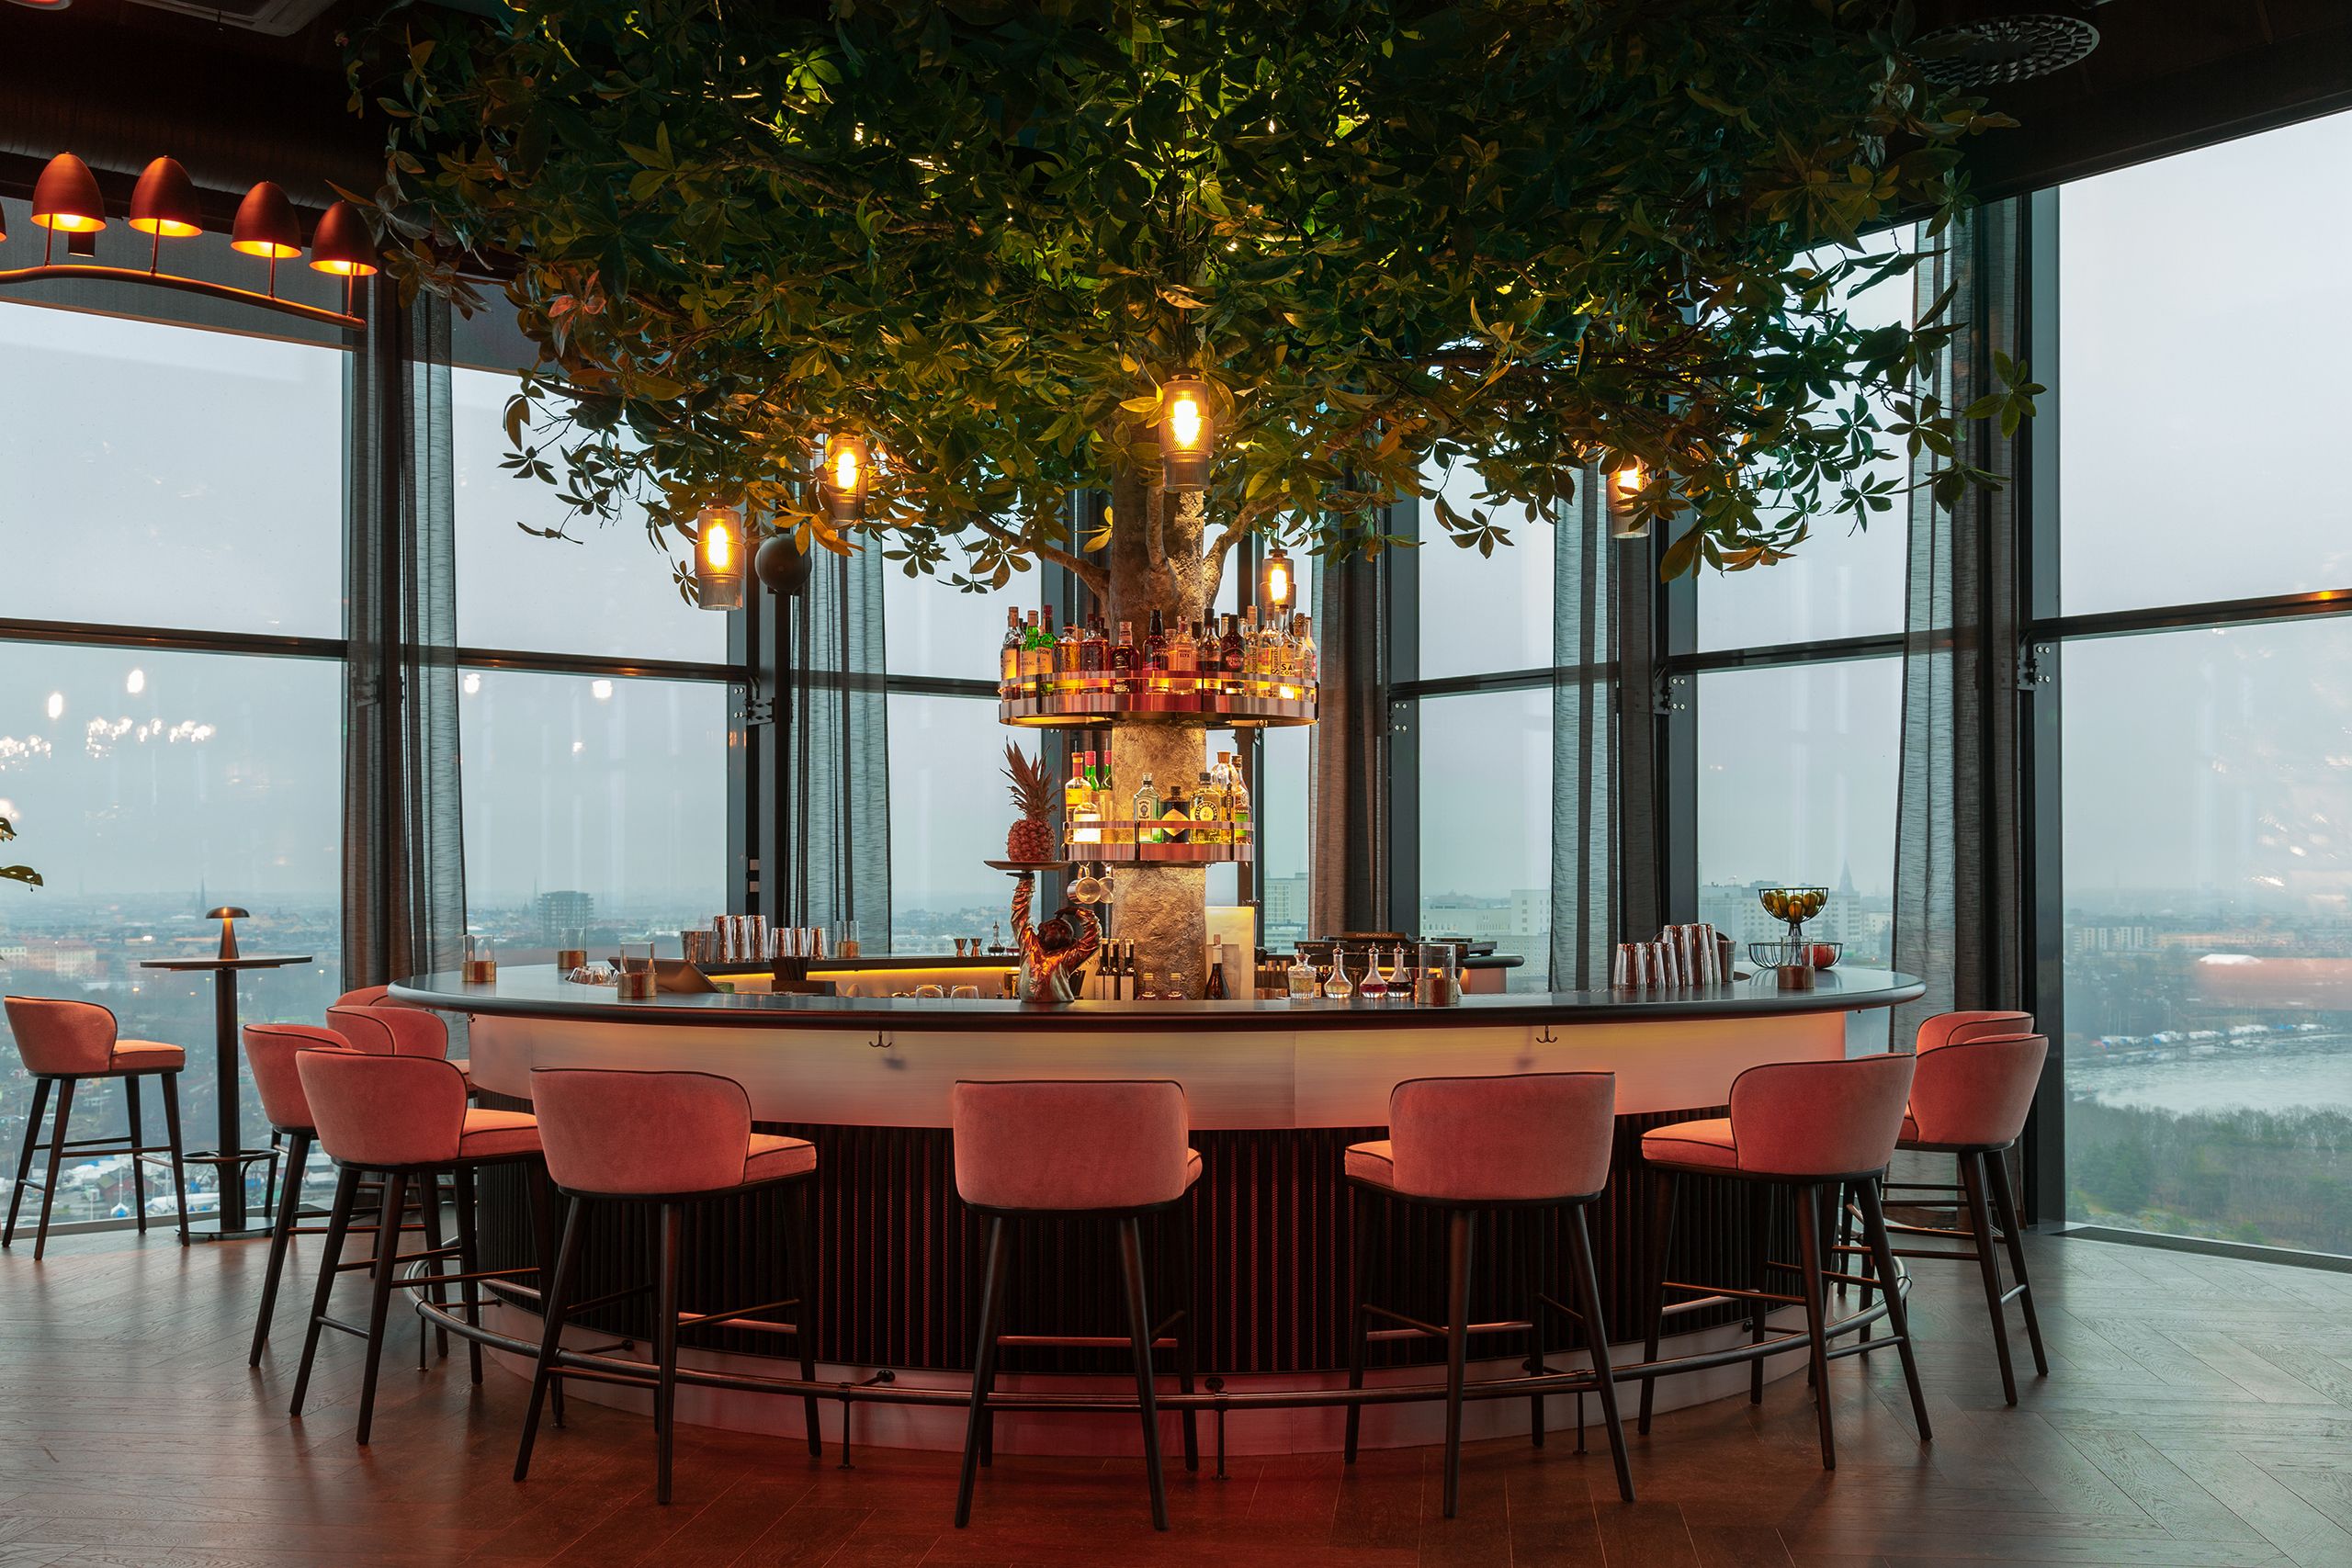 Inmitten des Bildes befindet sich eine atmosphärisch beleuchtete Bar vor einer Panorama Fensterfront.